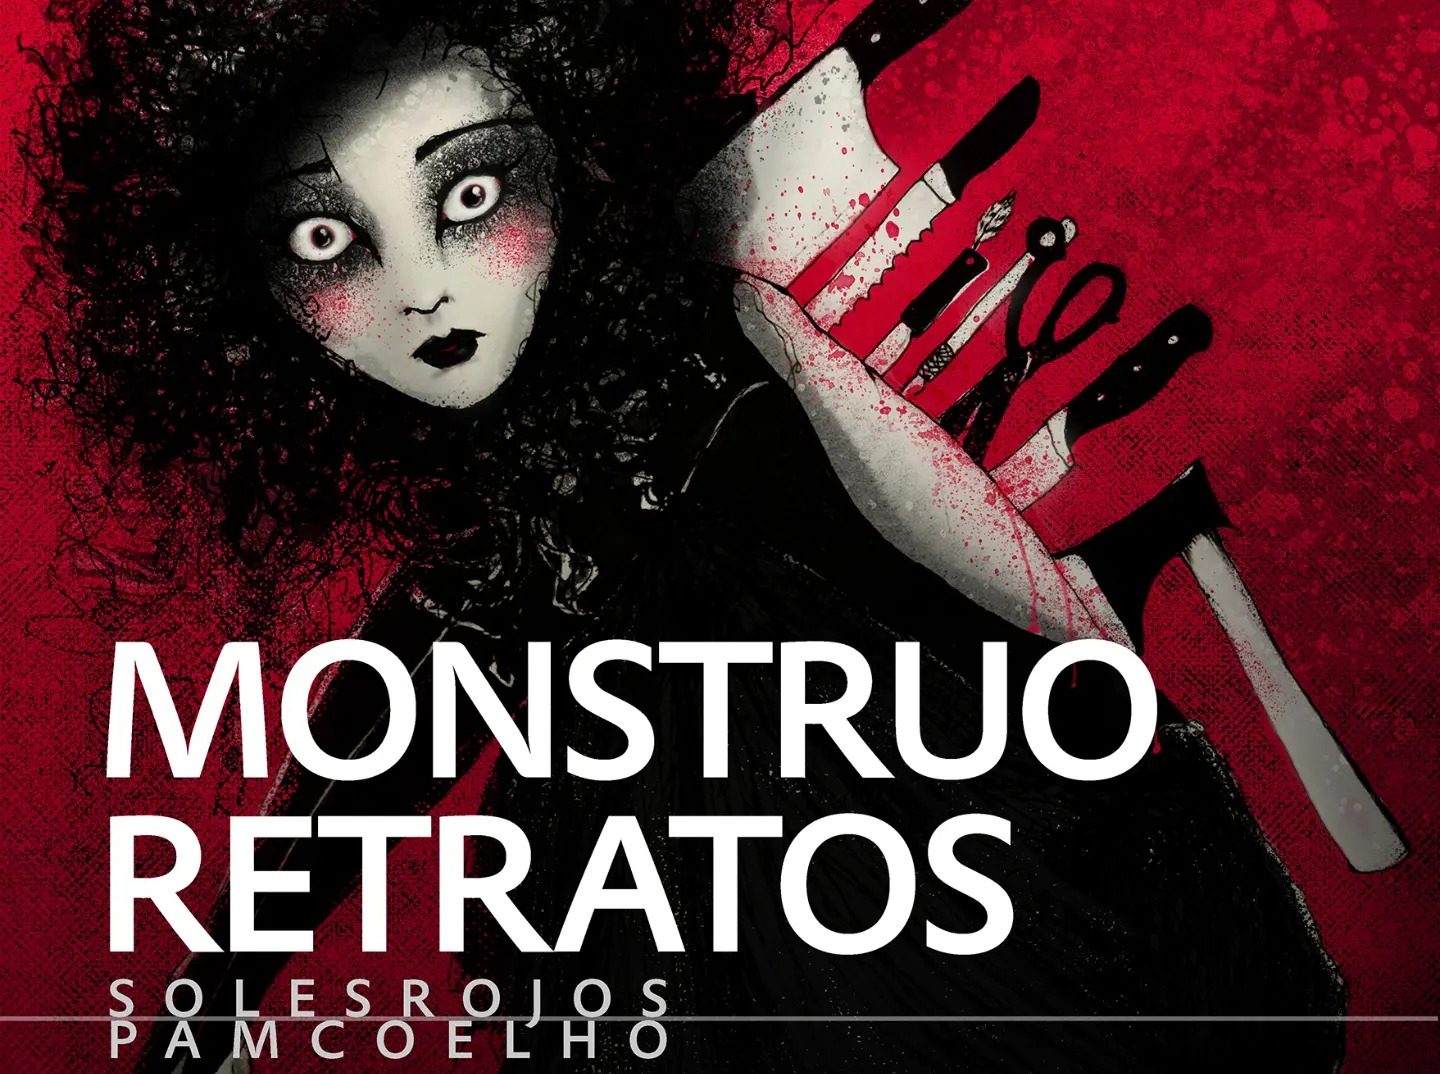 Pam Coelho presenta "Monstruo-Retratos" en Ponferrada: Una exploración artística de los demonios interiores en el Morticia 1